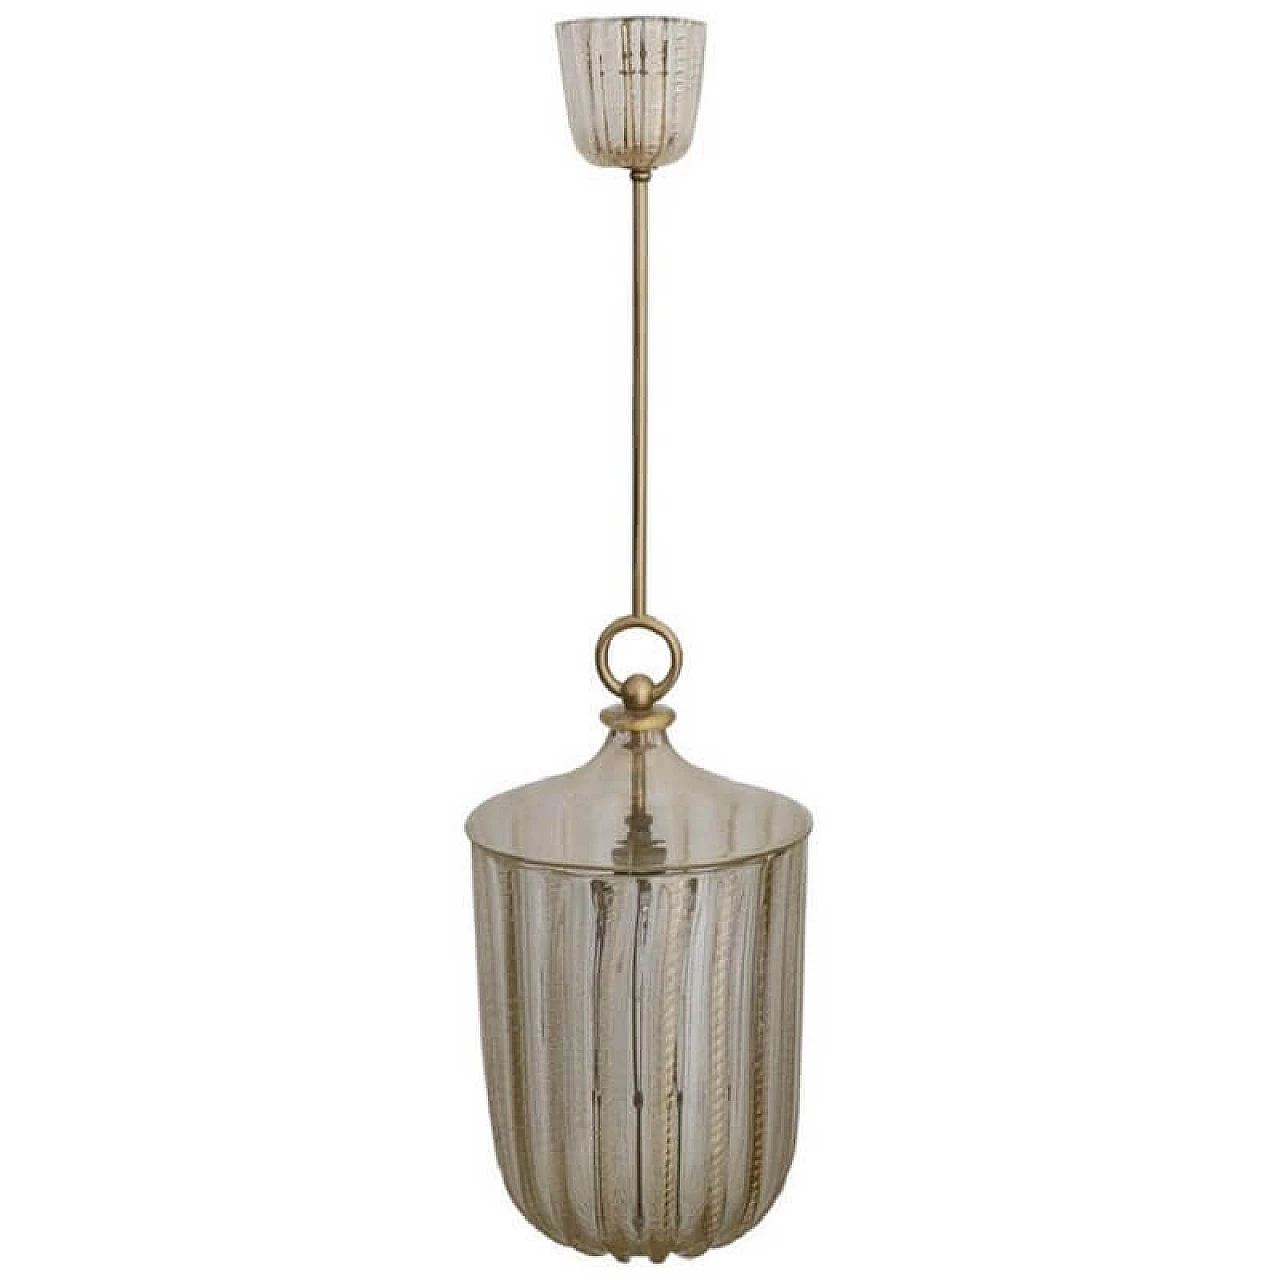 Murano glass chandelier, Barovier 1068798